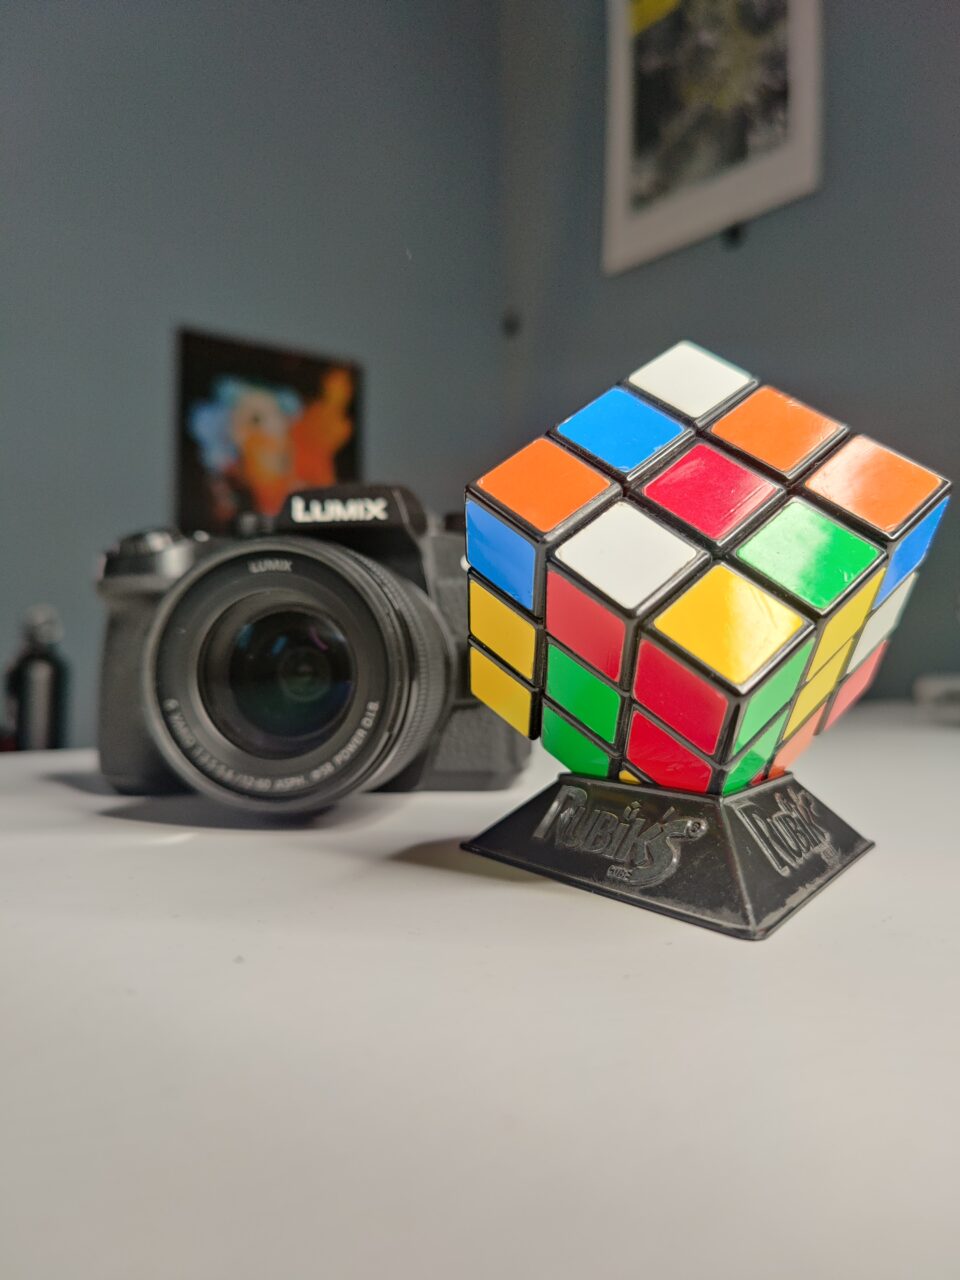 Kostka Rubika na pierwszym planie na czarnym stojaku, z rozmytym aparatem fotograficznym Panasonic Lumix w tle oraz plakatami na ścianie.